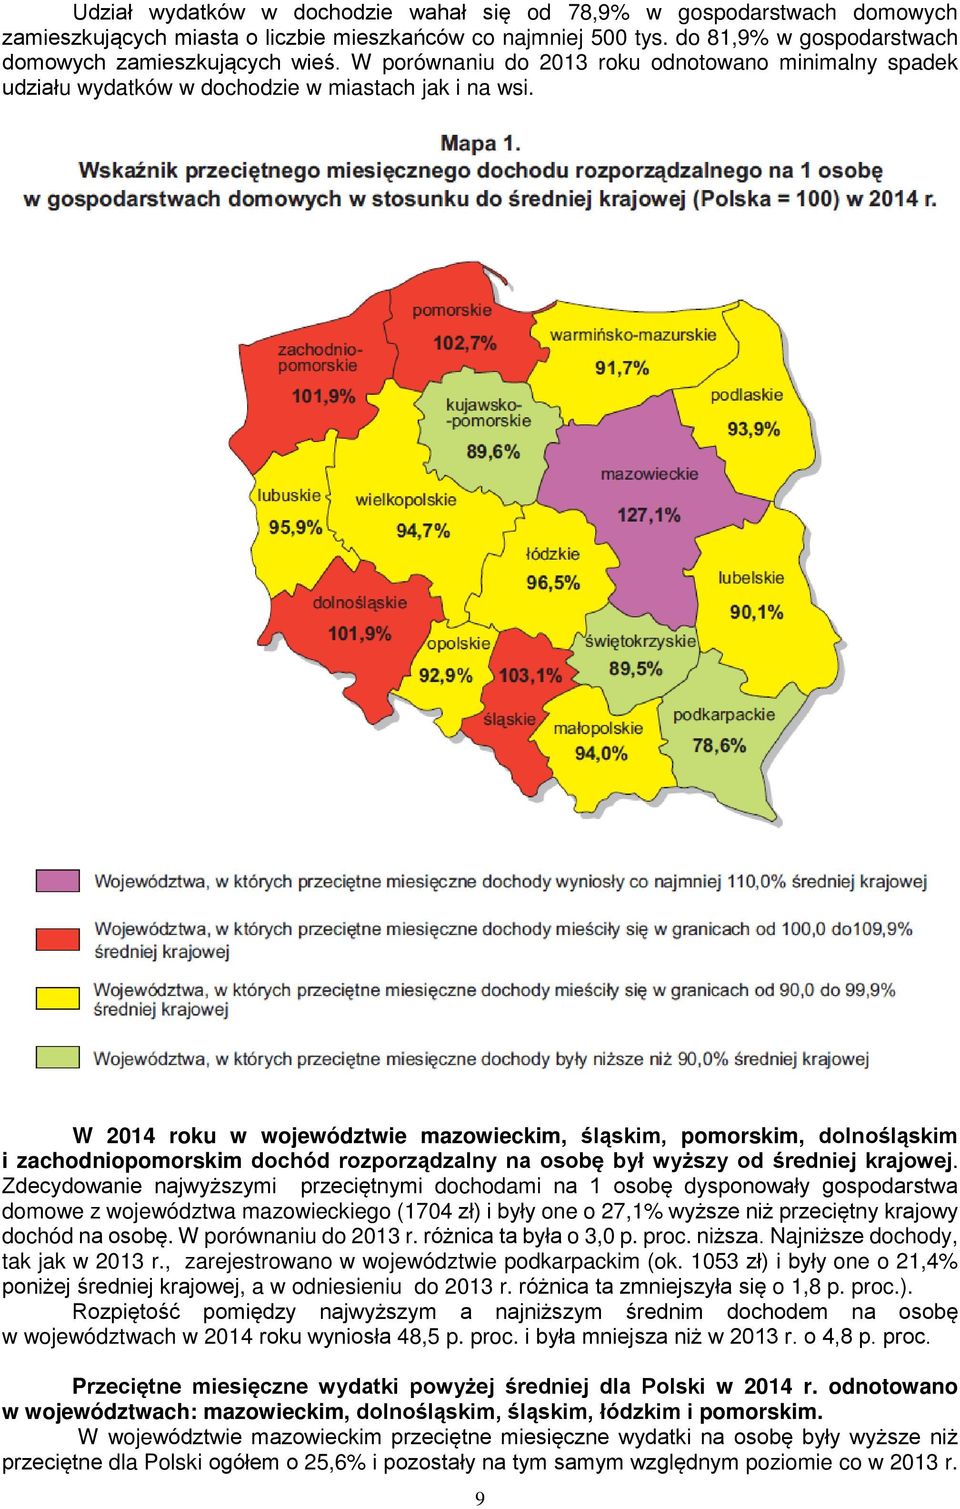 W 214 roku w województwie mazowieckim, śląskim, pomorskim, dolnośląskim i zachodniopomorskim dochód rozporządzalny na osobę był wyższy od średniej krajowej.